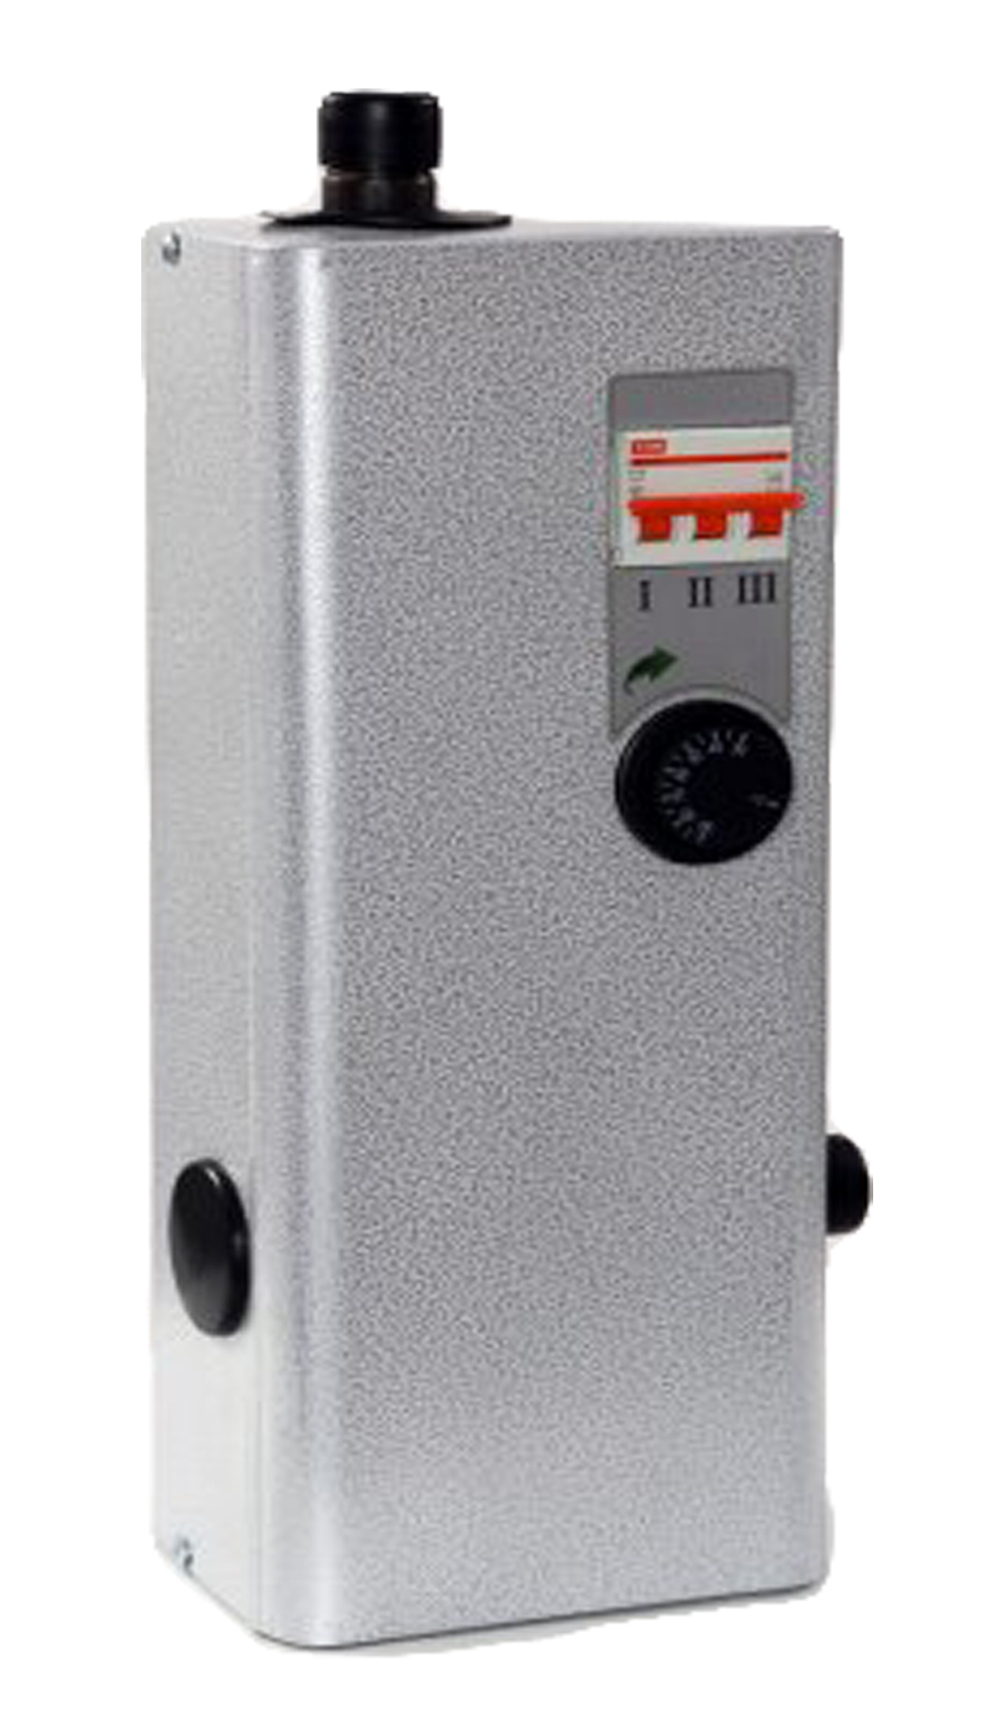 Котел отопления ЭВН - 4,5А на автомате (с защитой от короткого замыкания)